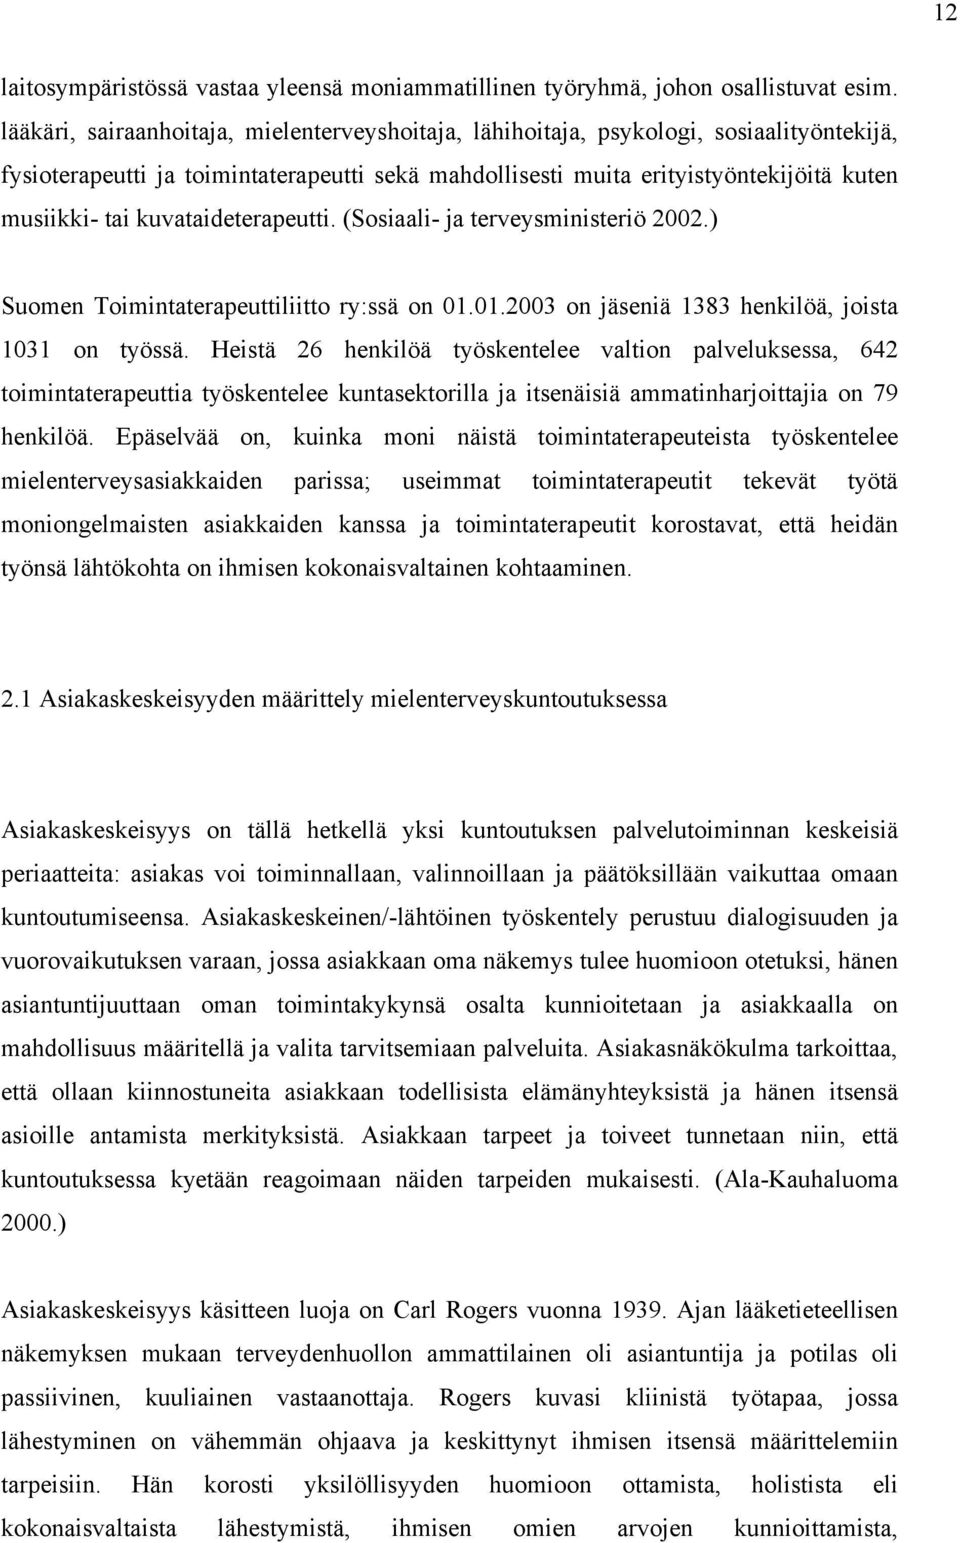 kuvataideterapeutti. (Sosiaali- ja terveysministeriö 2002.) Suomen Toimintaterapeuttiliitto ry:ssä on 01.01.2003 on jäseniä 1383 henkilöä, joista 1031 on työssä.